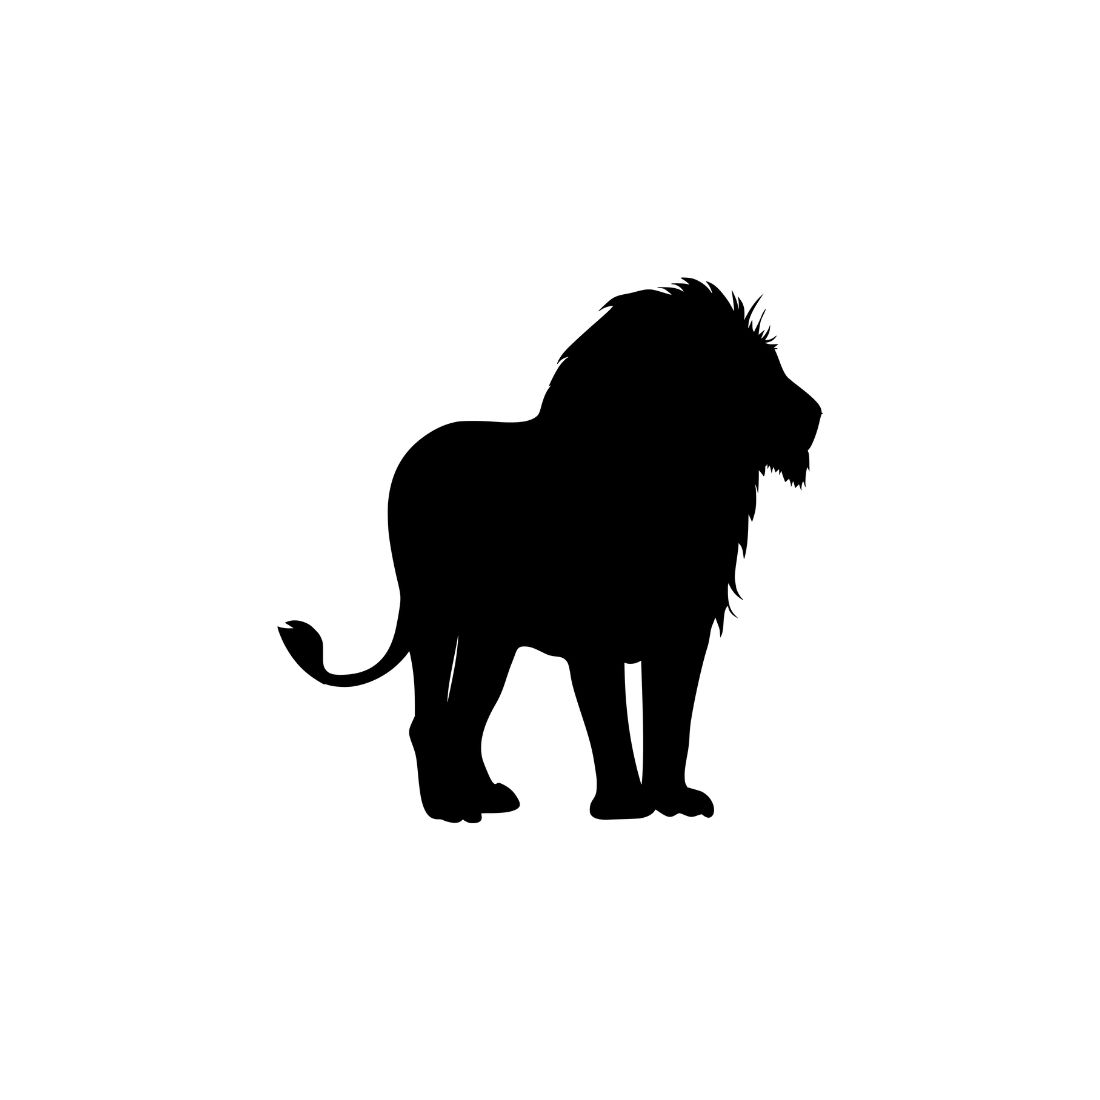 Lion Black Silhouette Bundle Preview image.